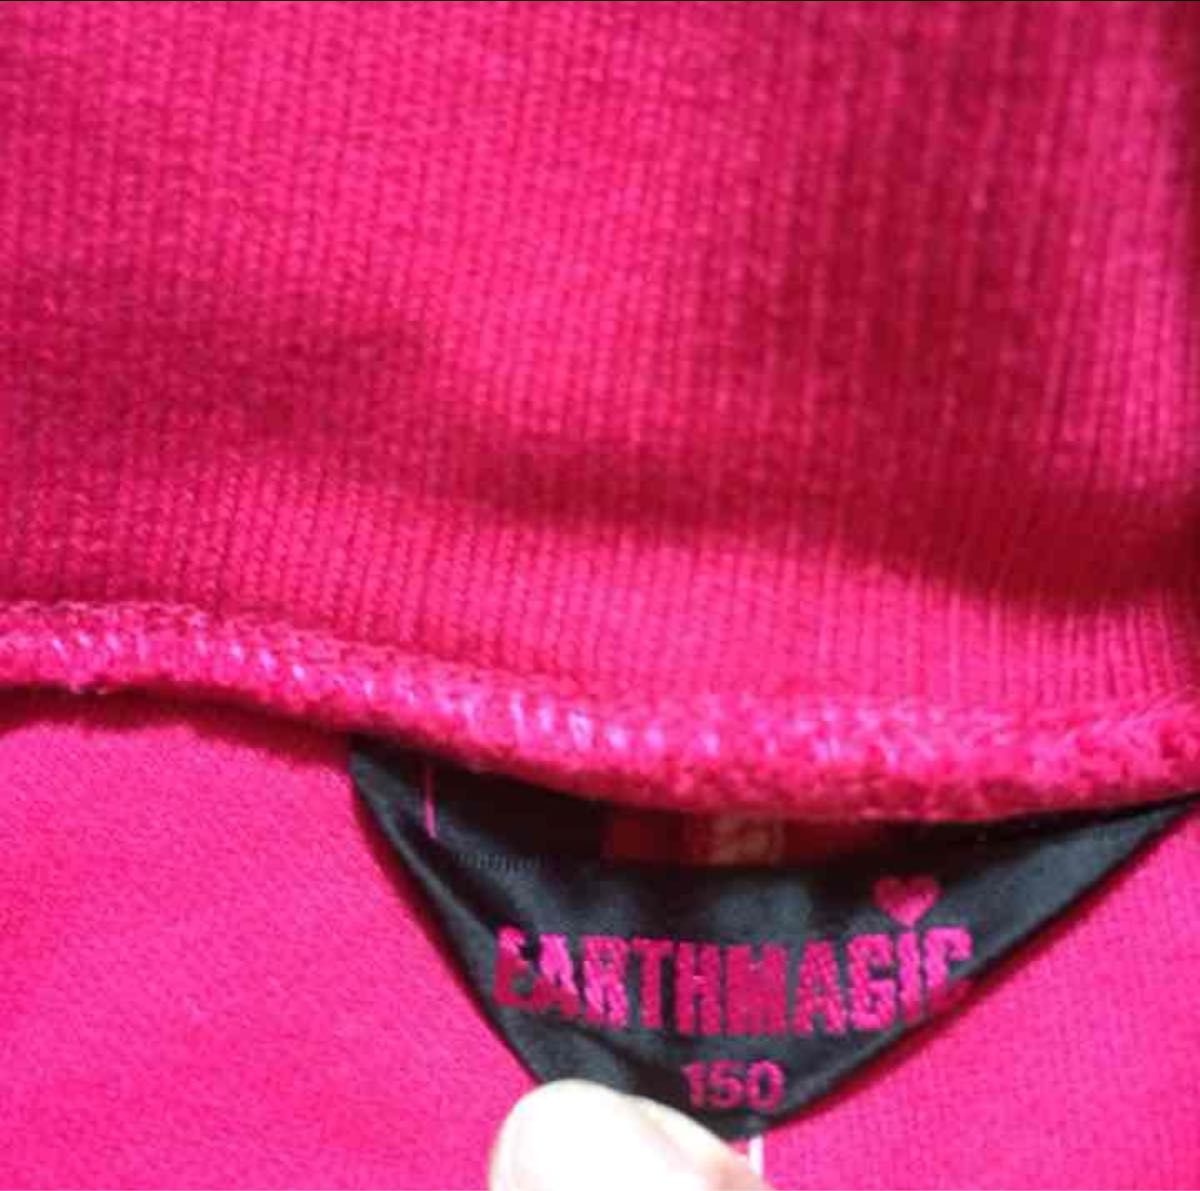 earthmagic インナー付きチア風スカート